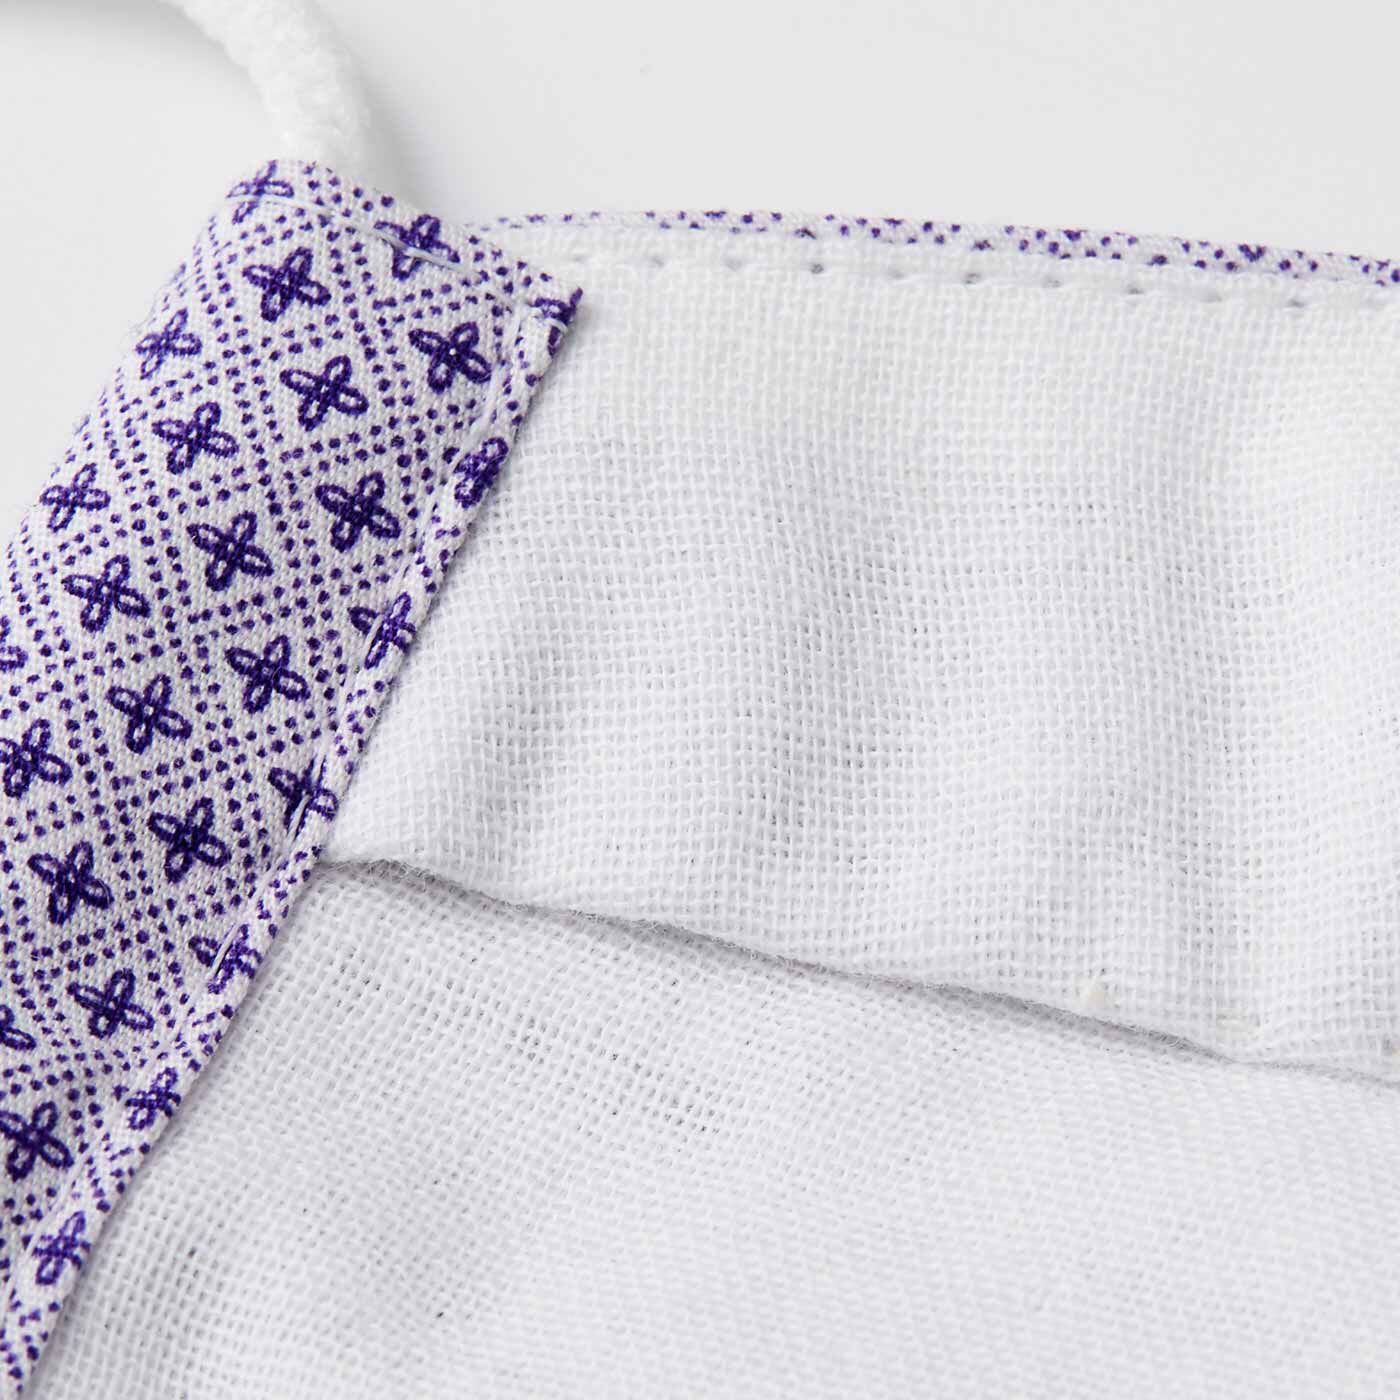 Real Stock|コーディネイトが楽しみ！ 2パターン作れる布マスクキット|内側は肌ざわりのよい白のダブルガーゼ。